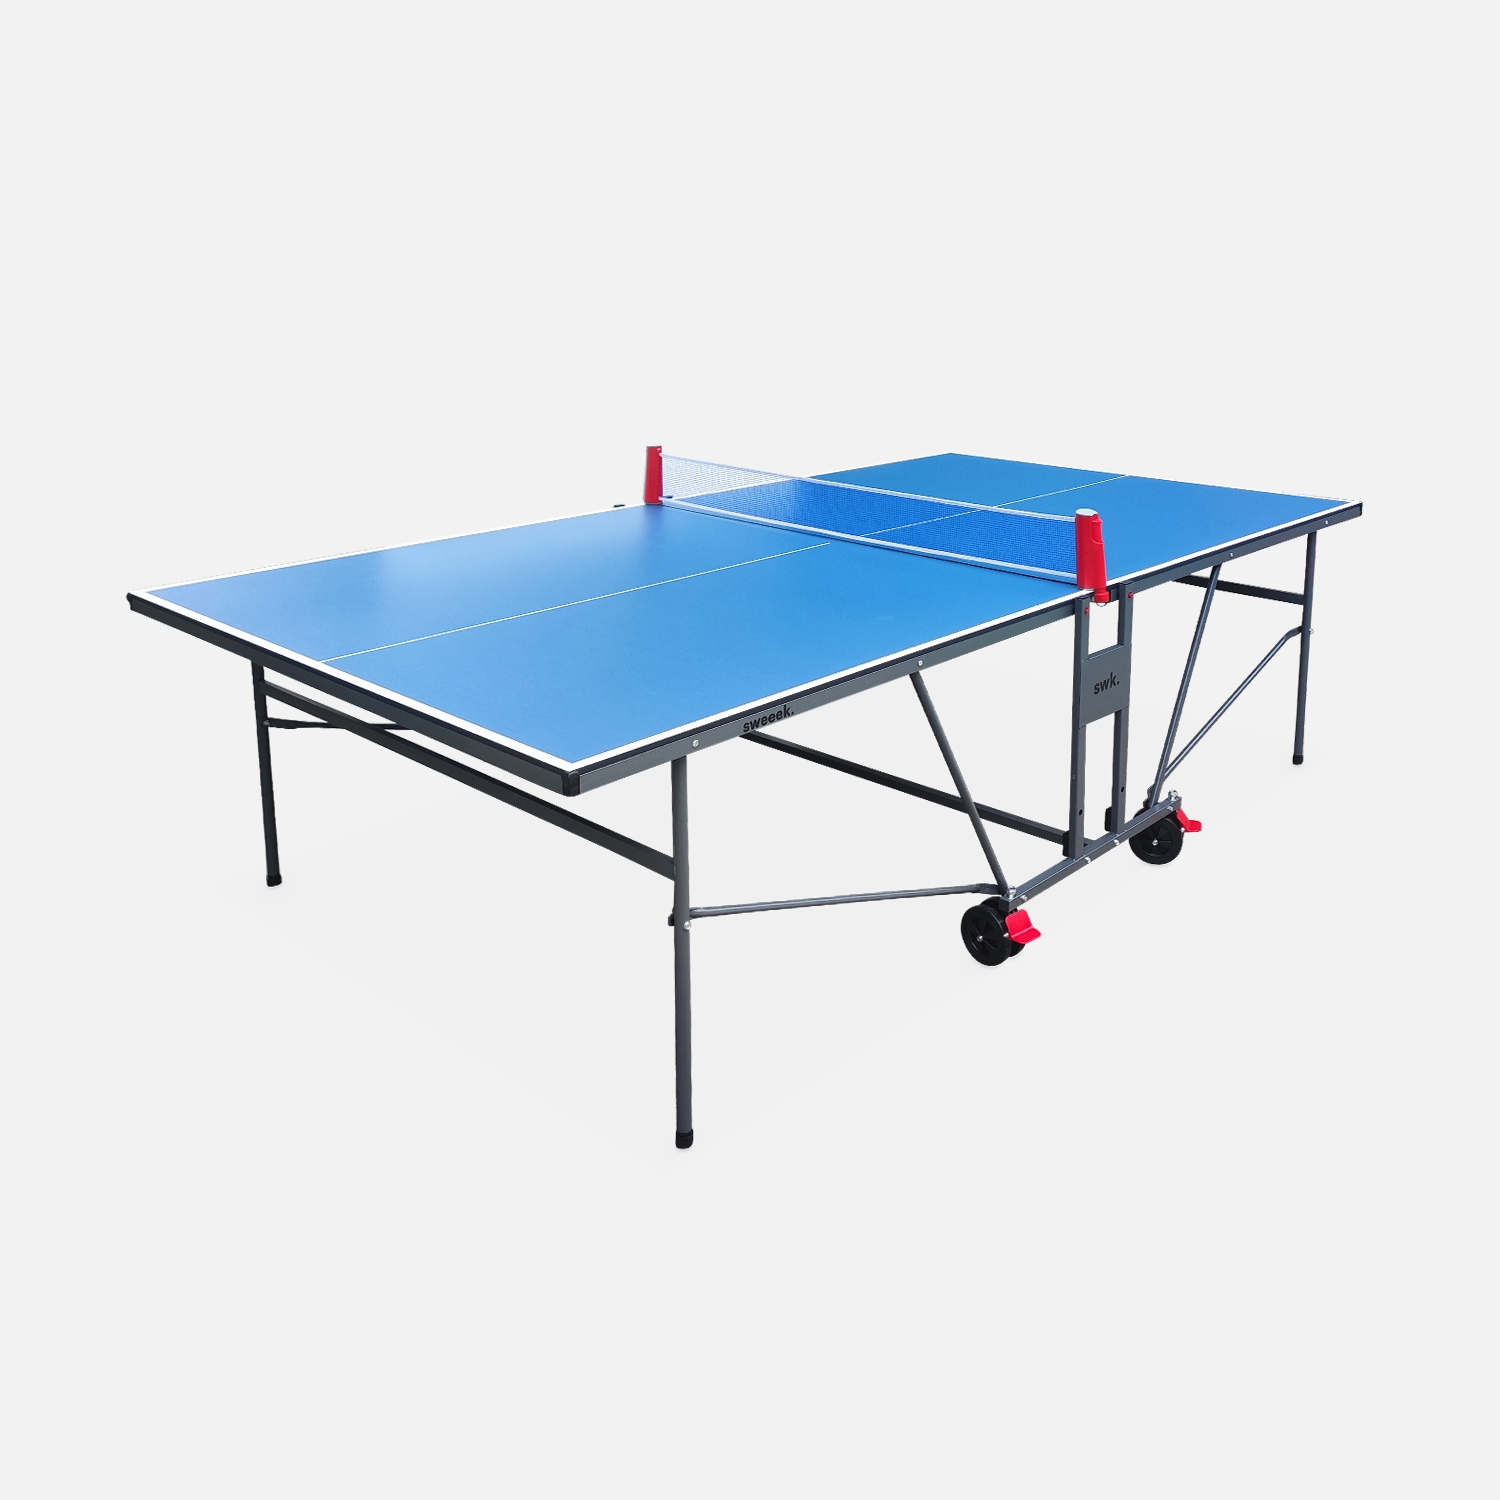 Table de ping pong indoor bleue - table pliable avec 2 raquettes et 3 balles. Pour utilisation intérieure. Sport tennis de table